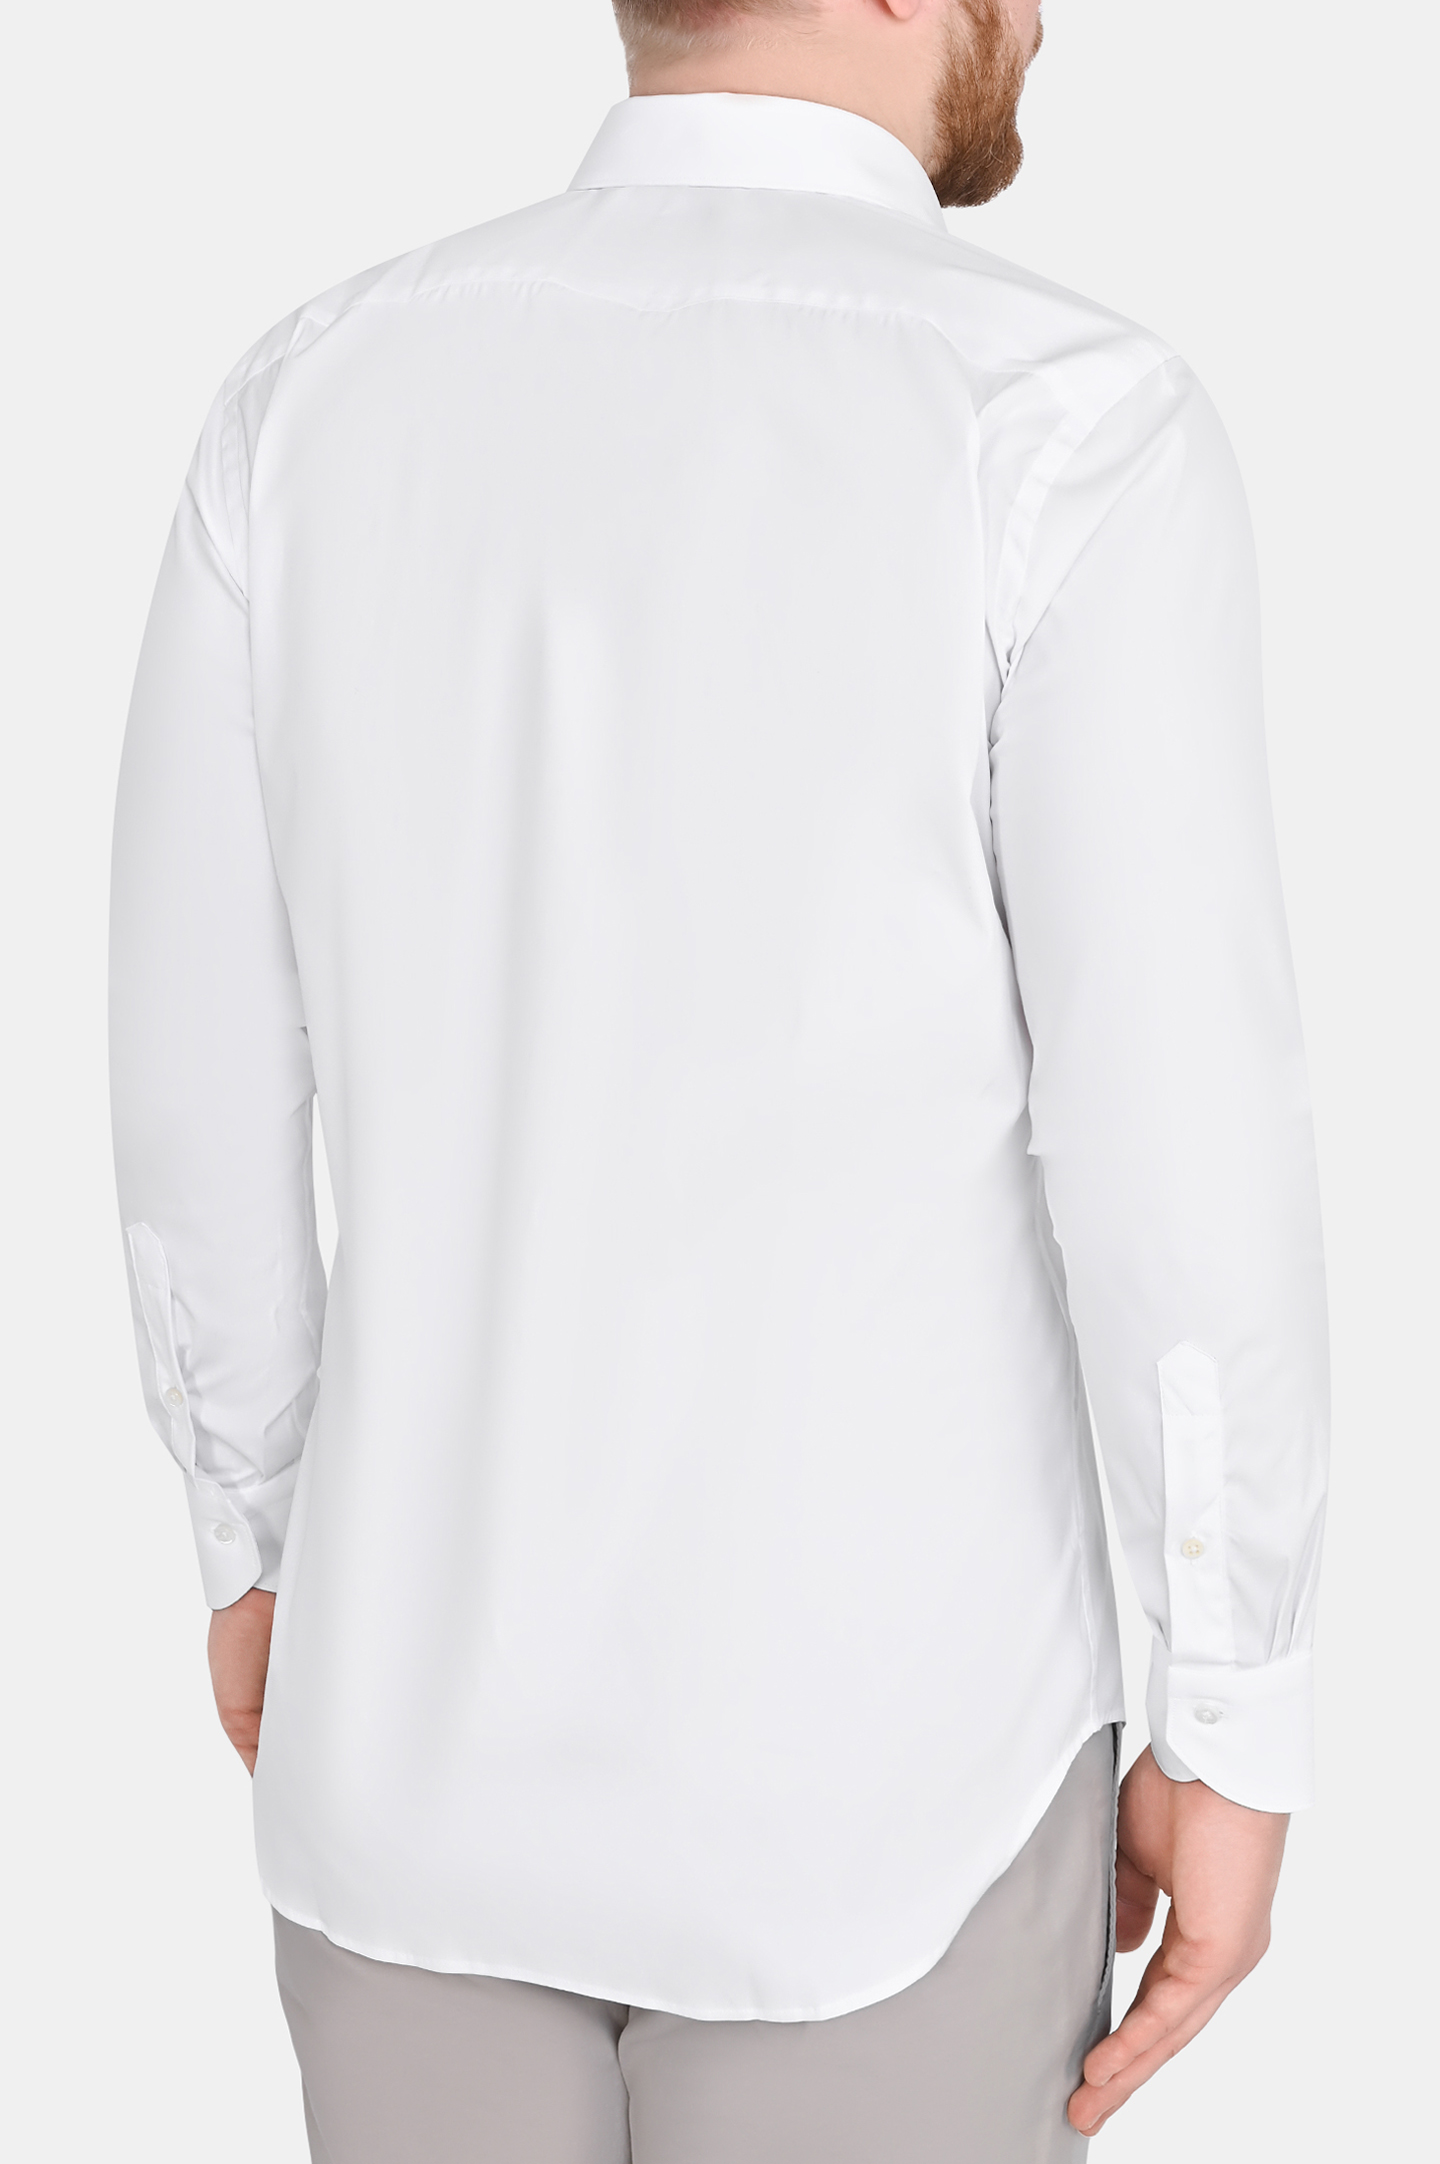 Рубашка из смеси хлопка, полиамида и эластана CANALI GA01222 7C3, цвет: Белый, Мужской